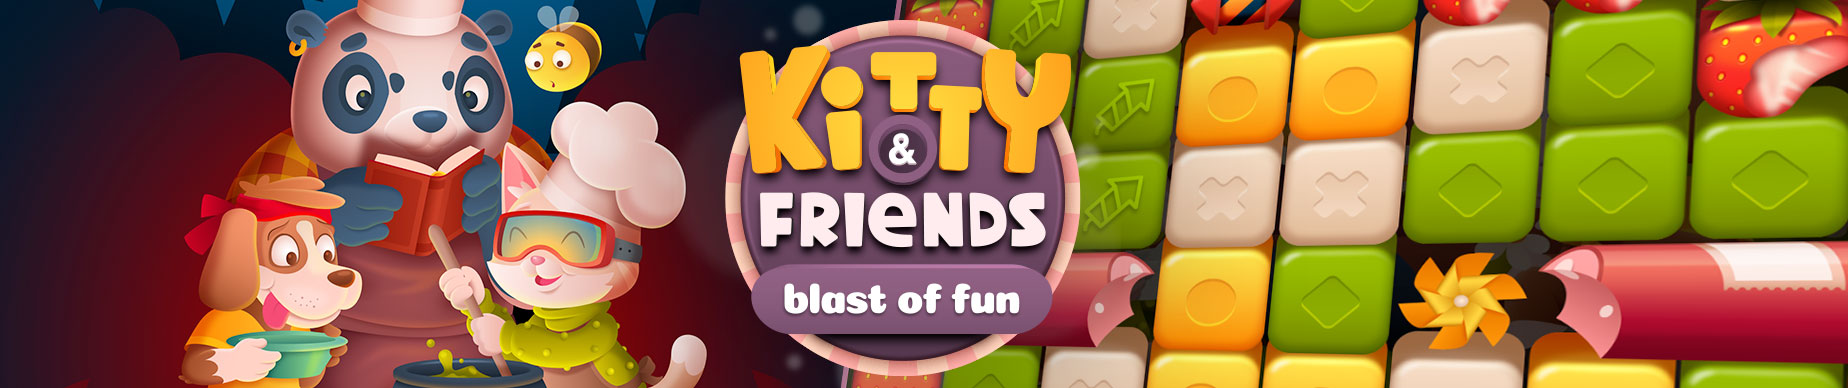 Kitty & Friends: blast of fun